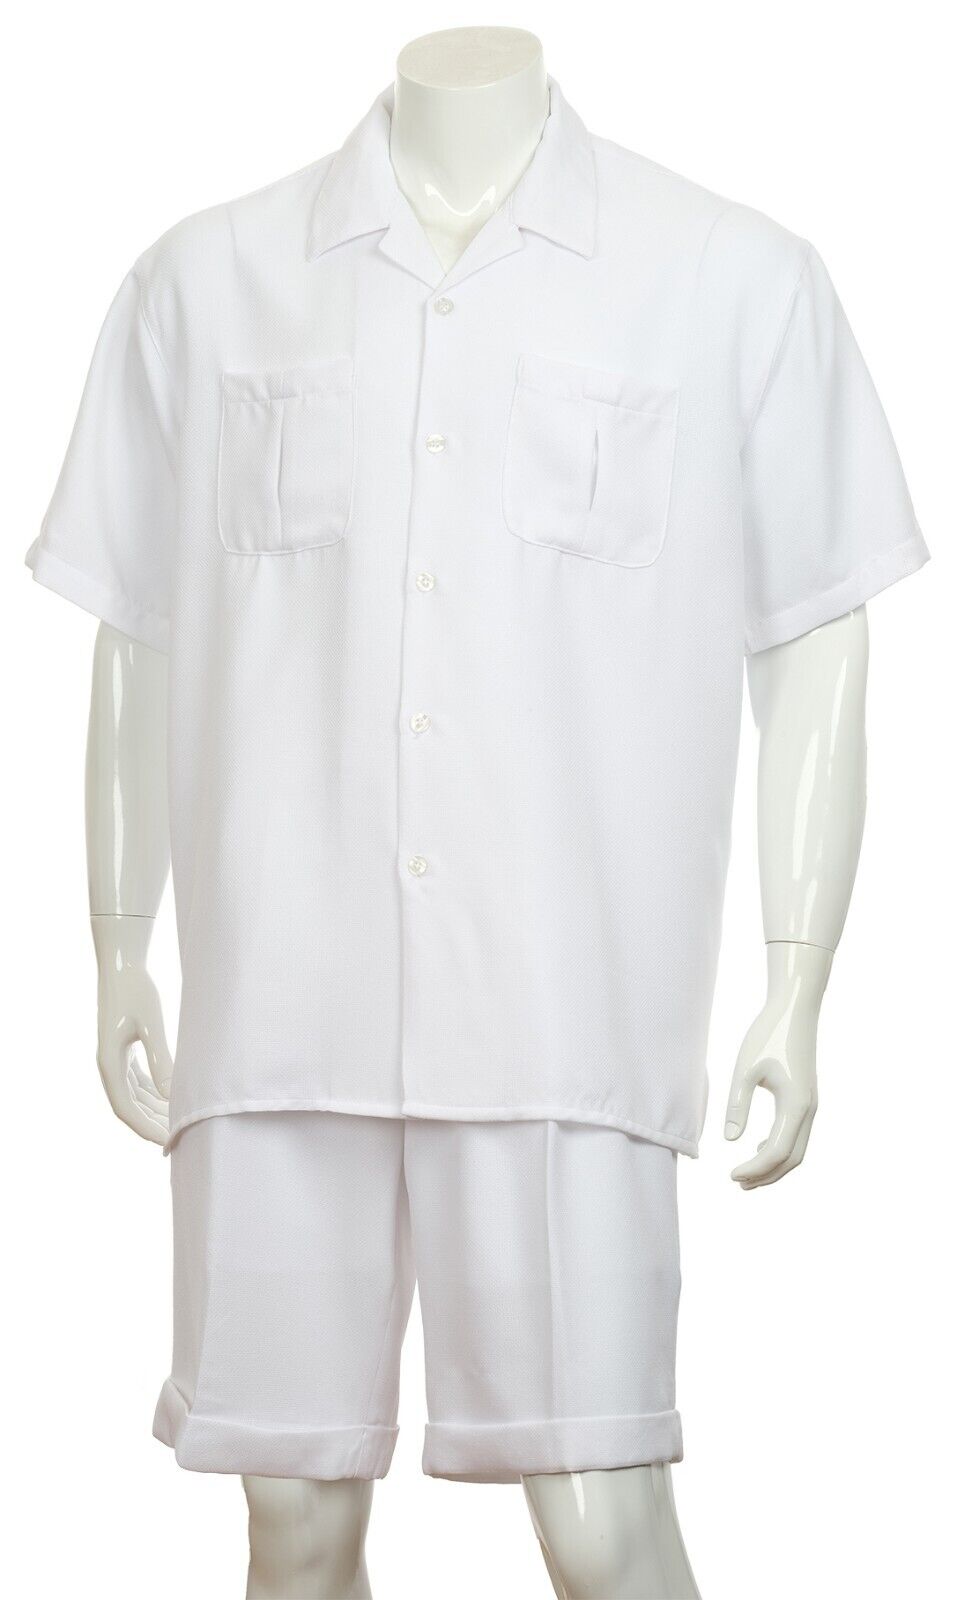 Fortino Landi Walking Set M2973-White - Church Suits For Less